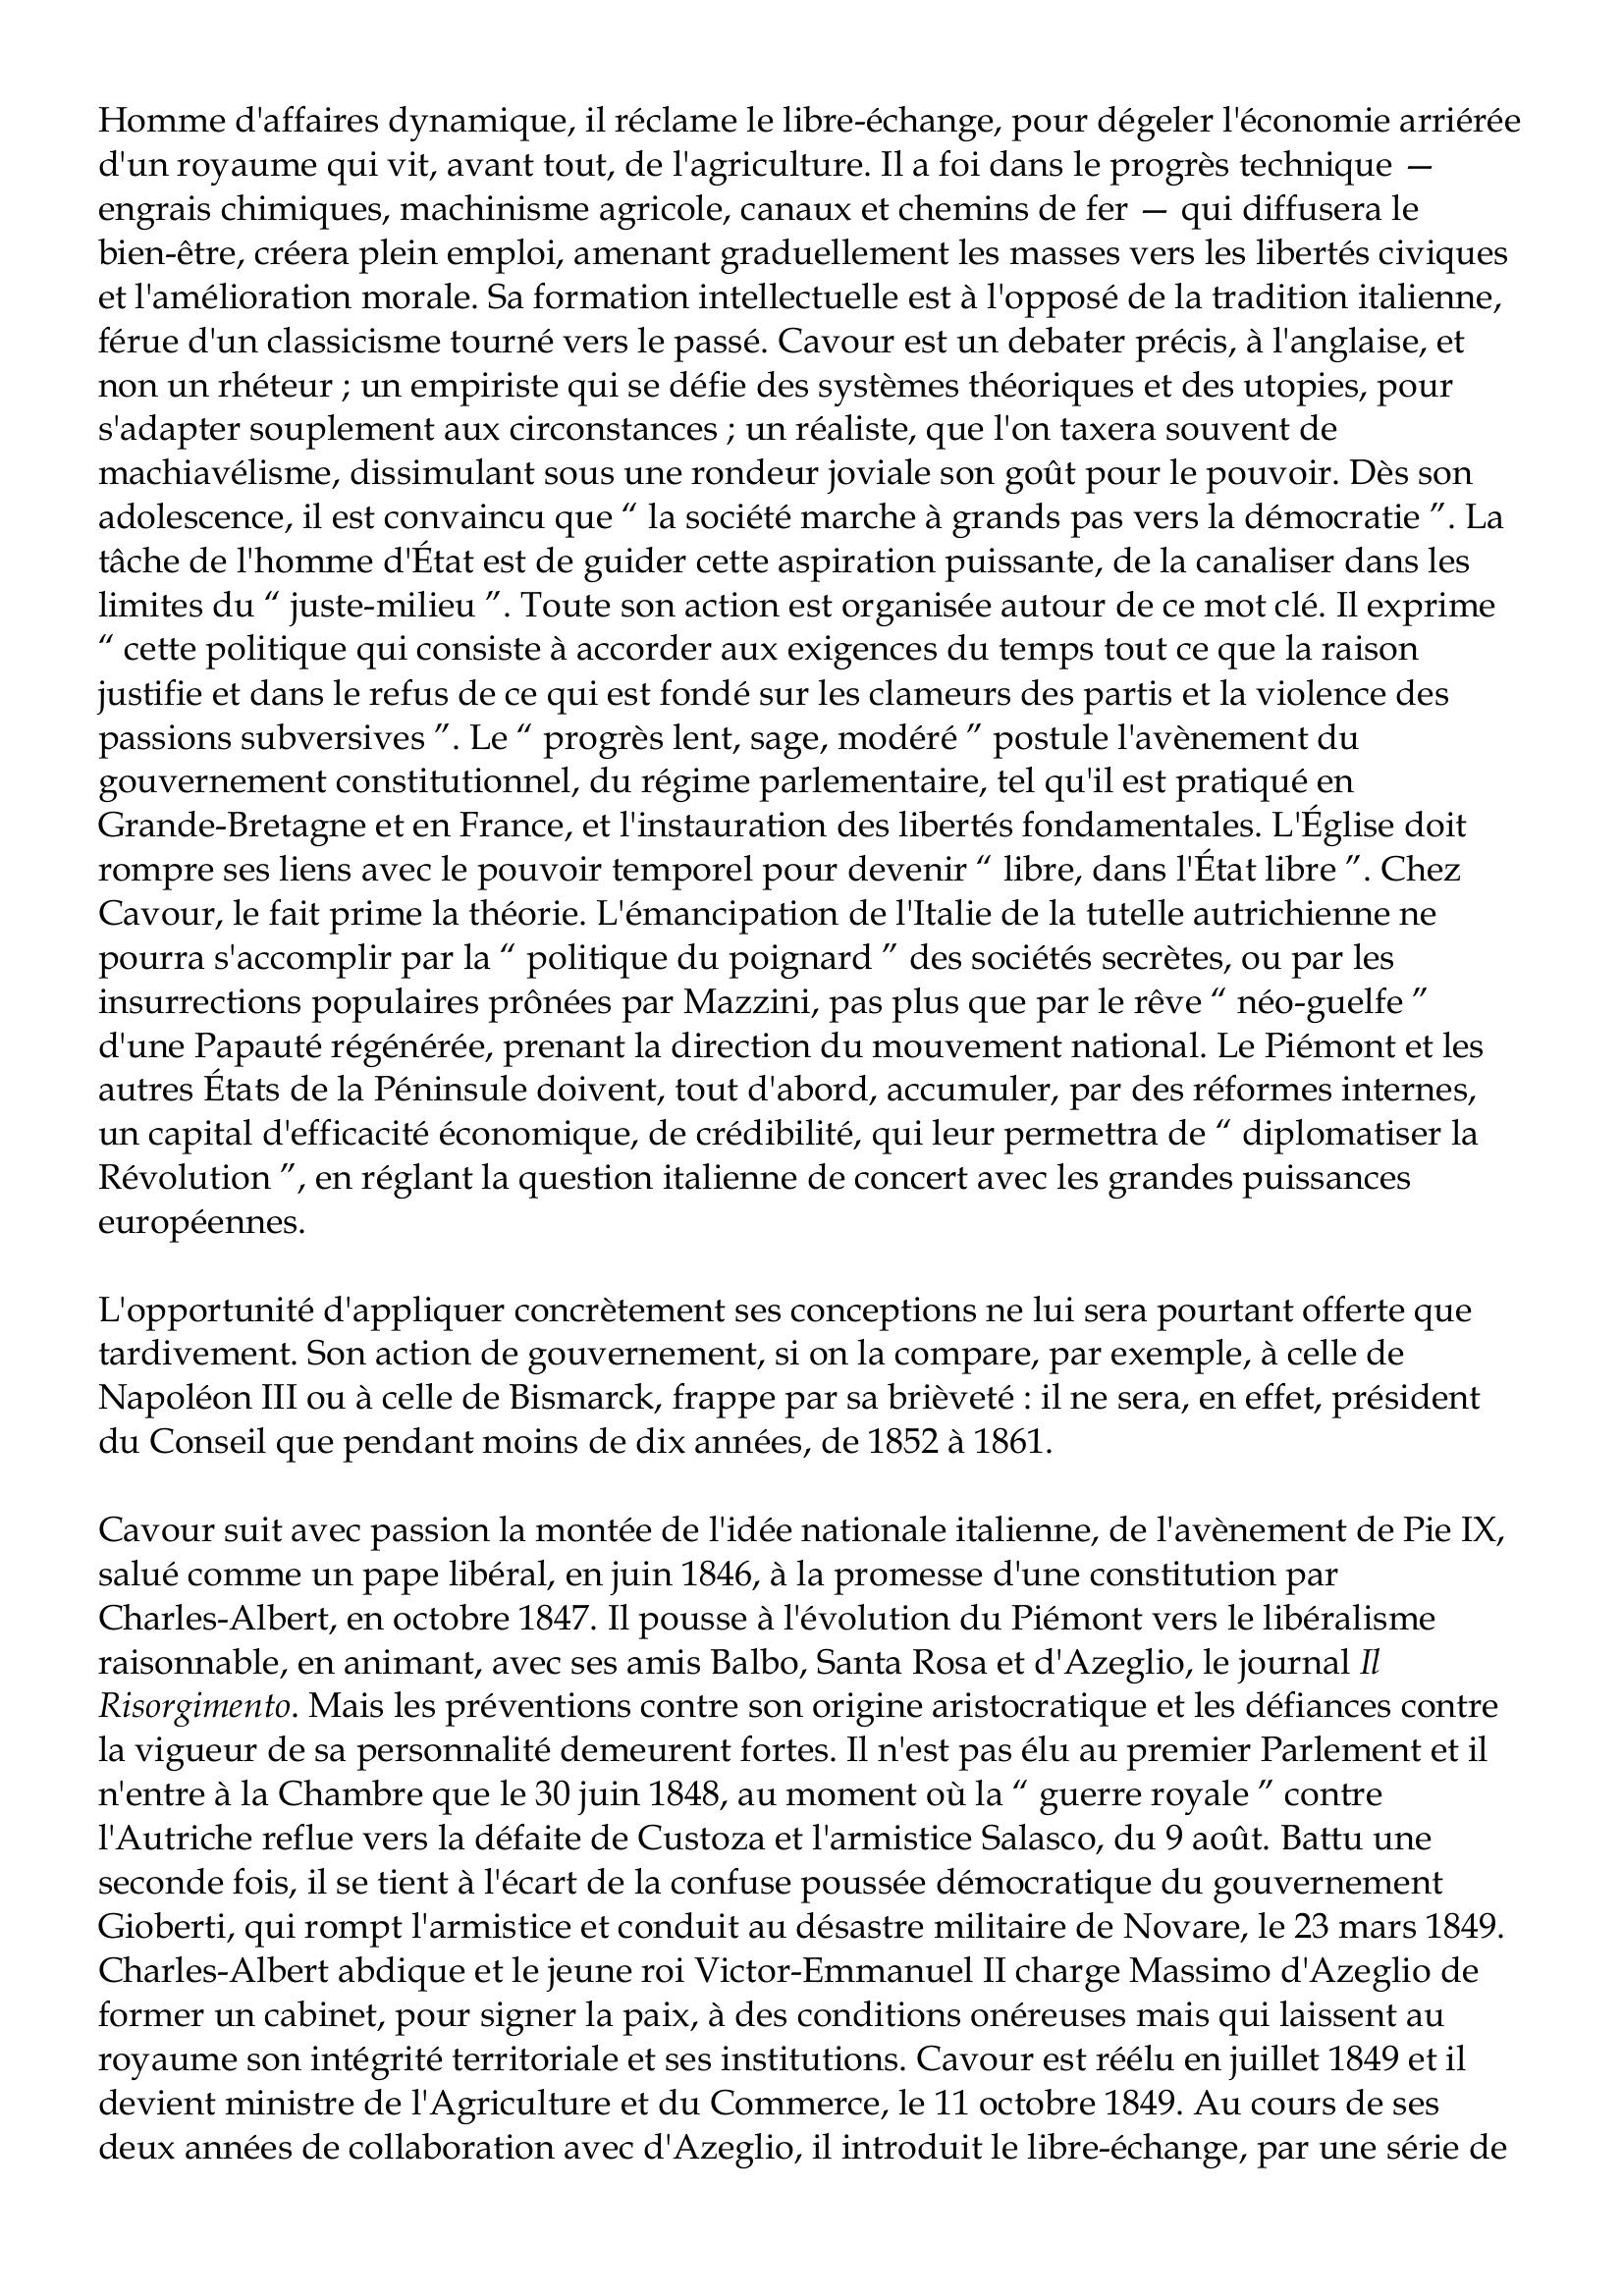 Prévisualisation du document Camillo Benso de Cavour
1810-1861
" Cavour n'est pas riche d'italianité.